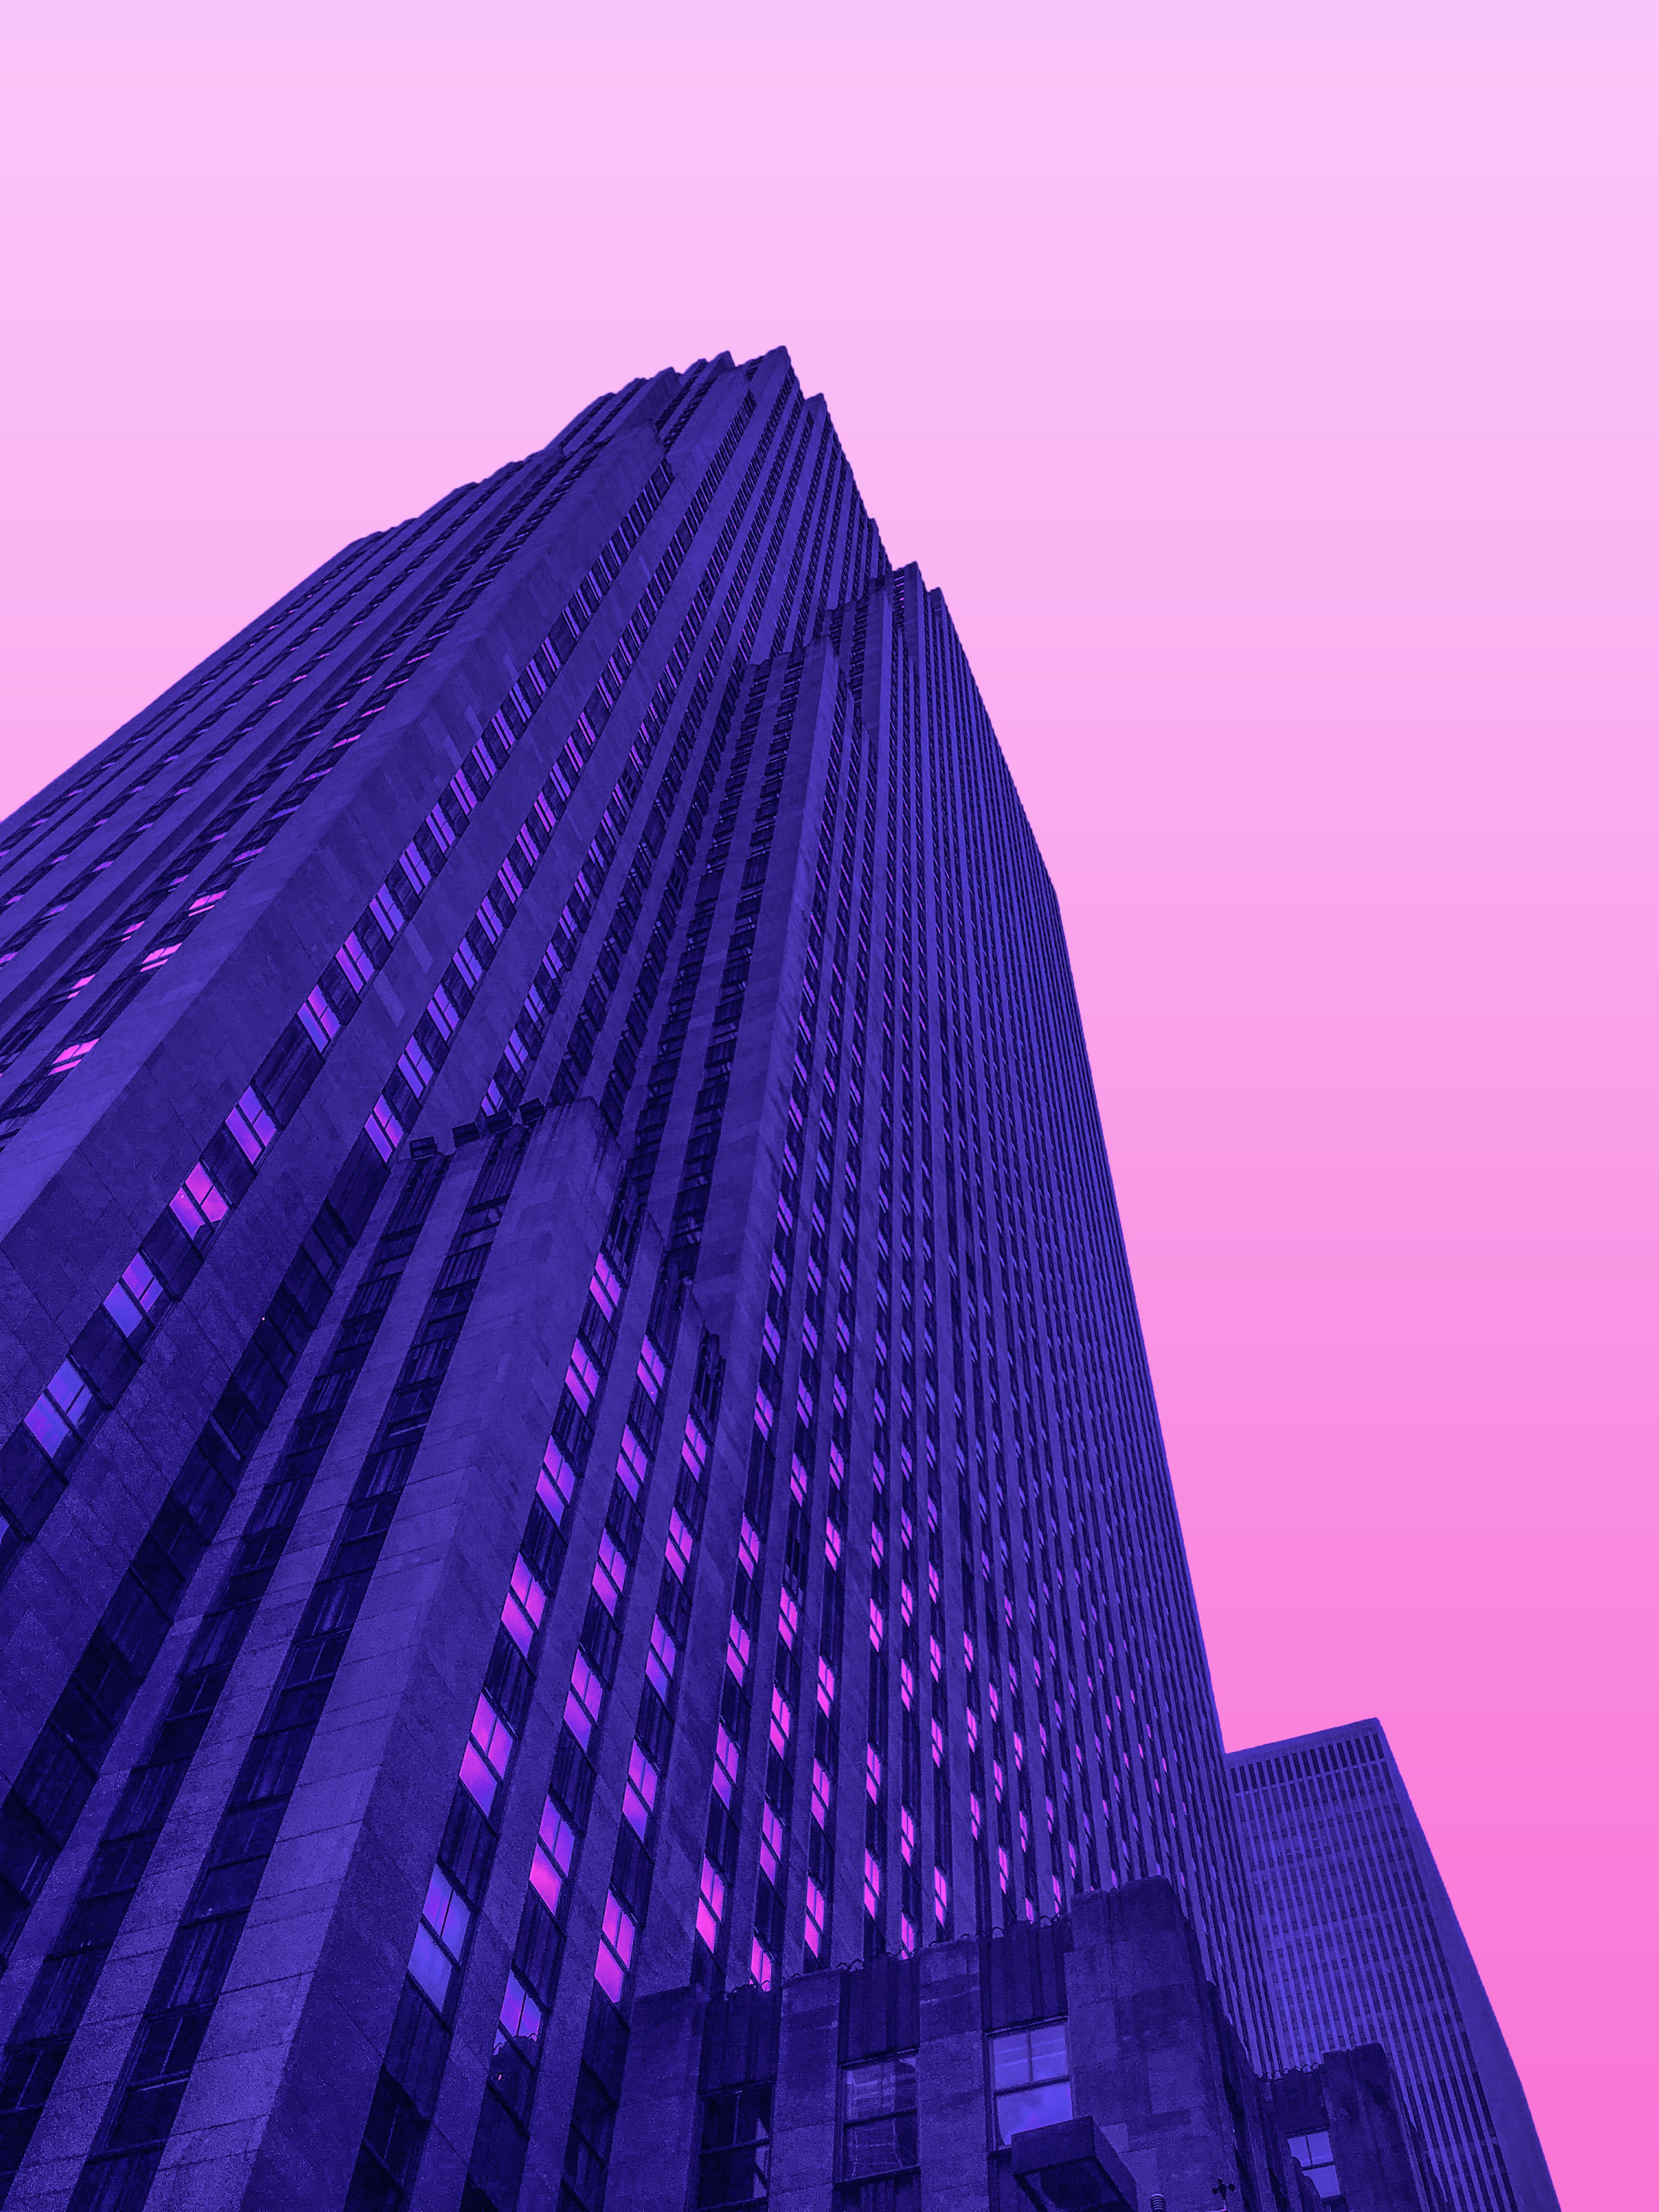 136863 descargar imagen minimalismo, rascacielos, arquitectura, violeta, edificio, púrpura: fondos de pantalla y protectores de pantalla gratis